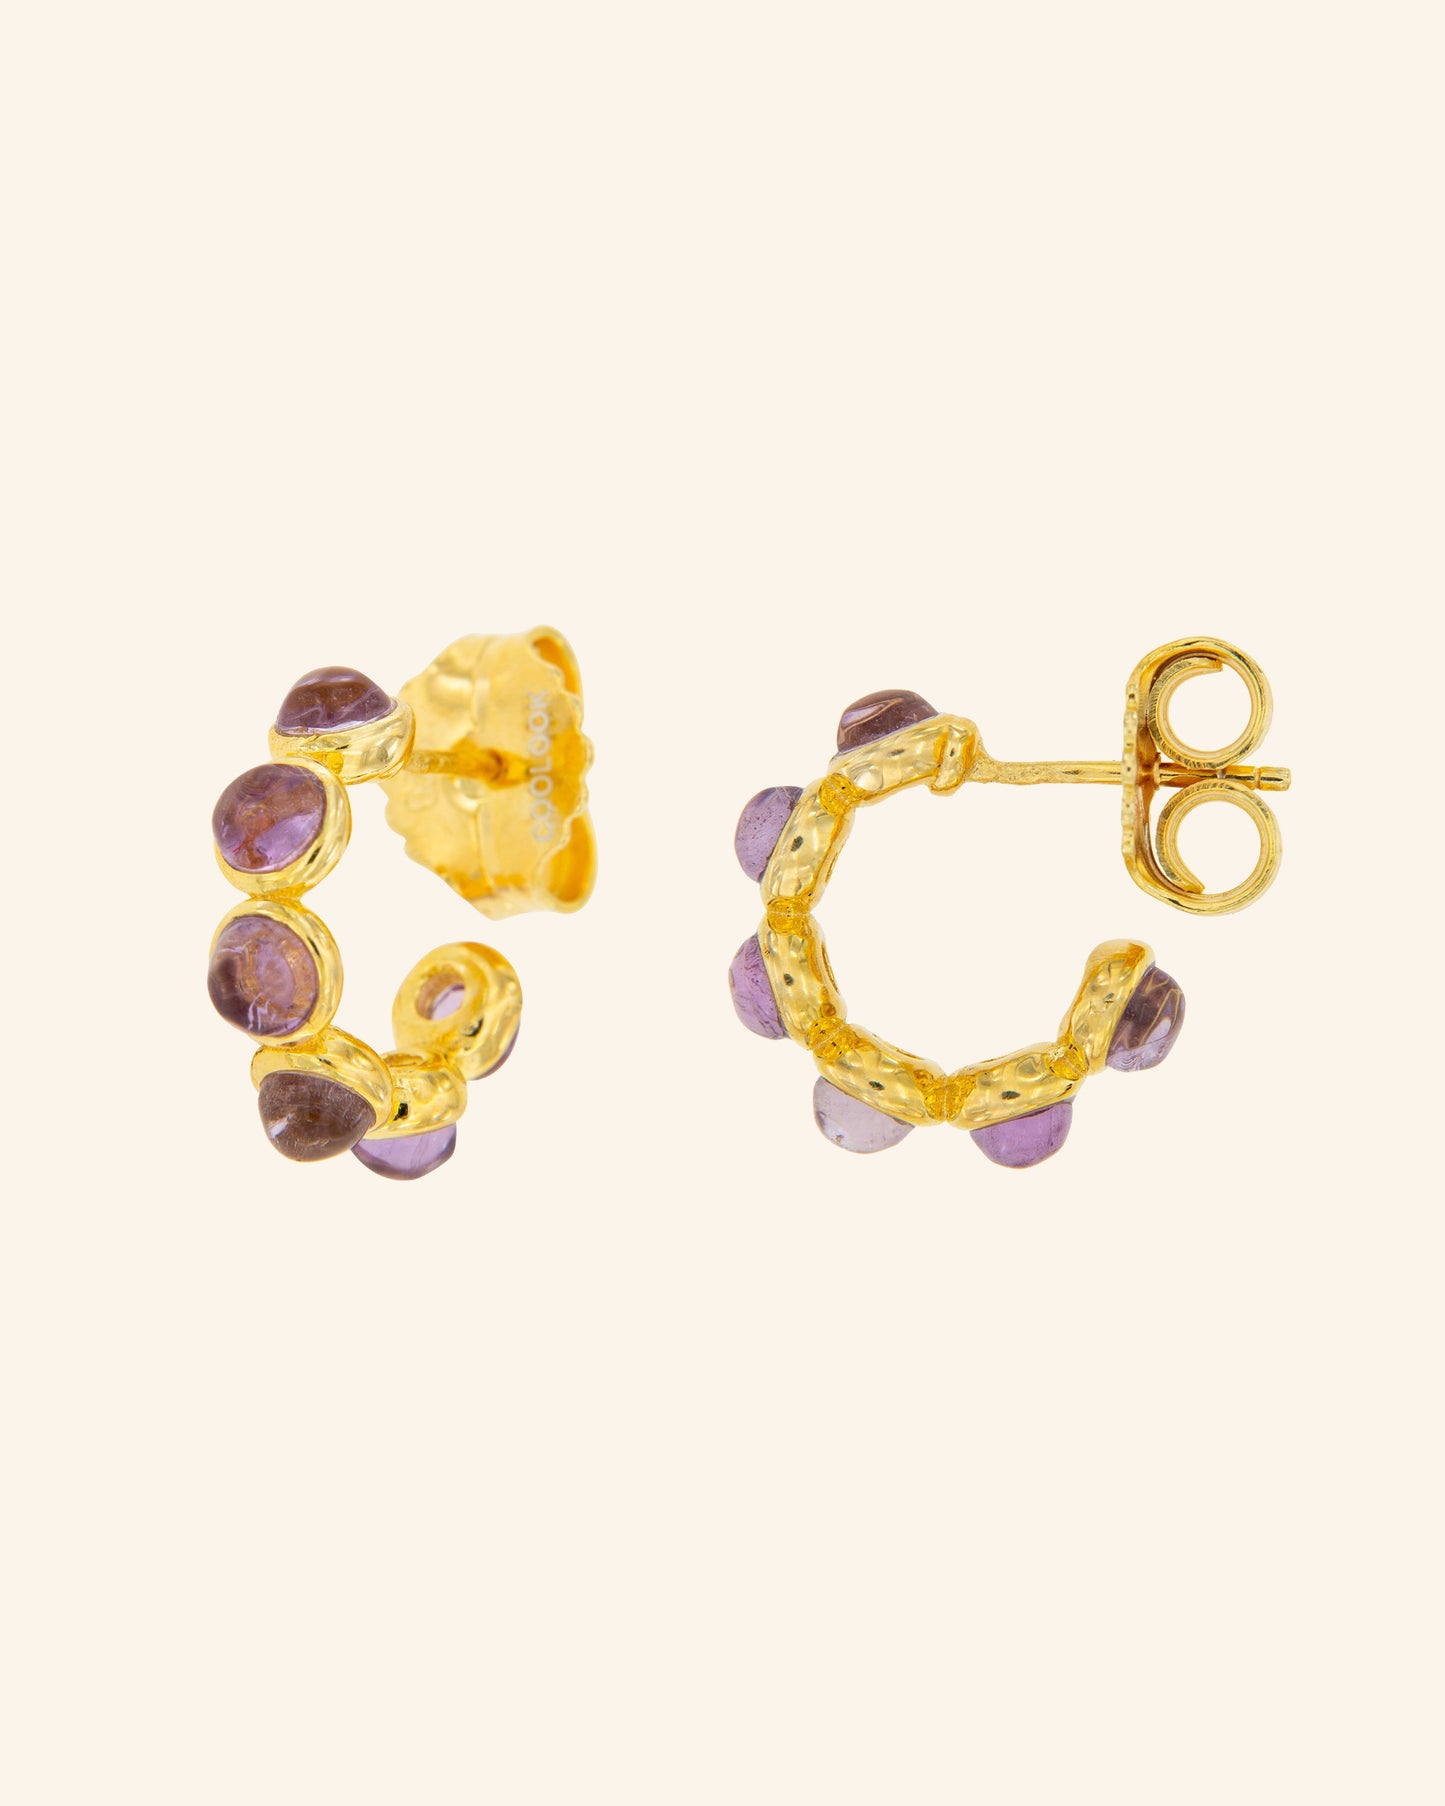 Paris earrings with amethyst